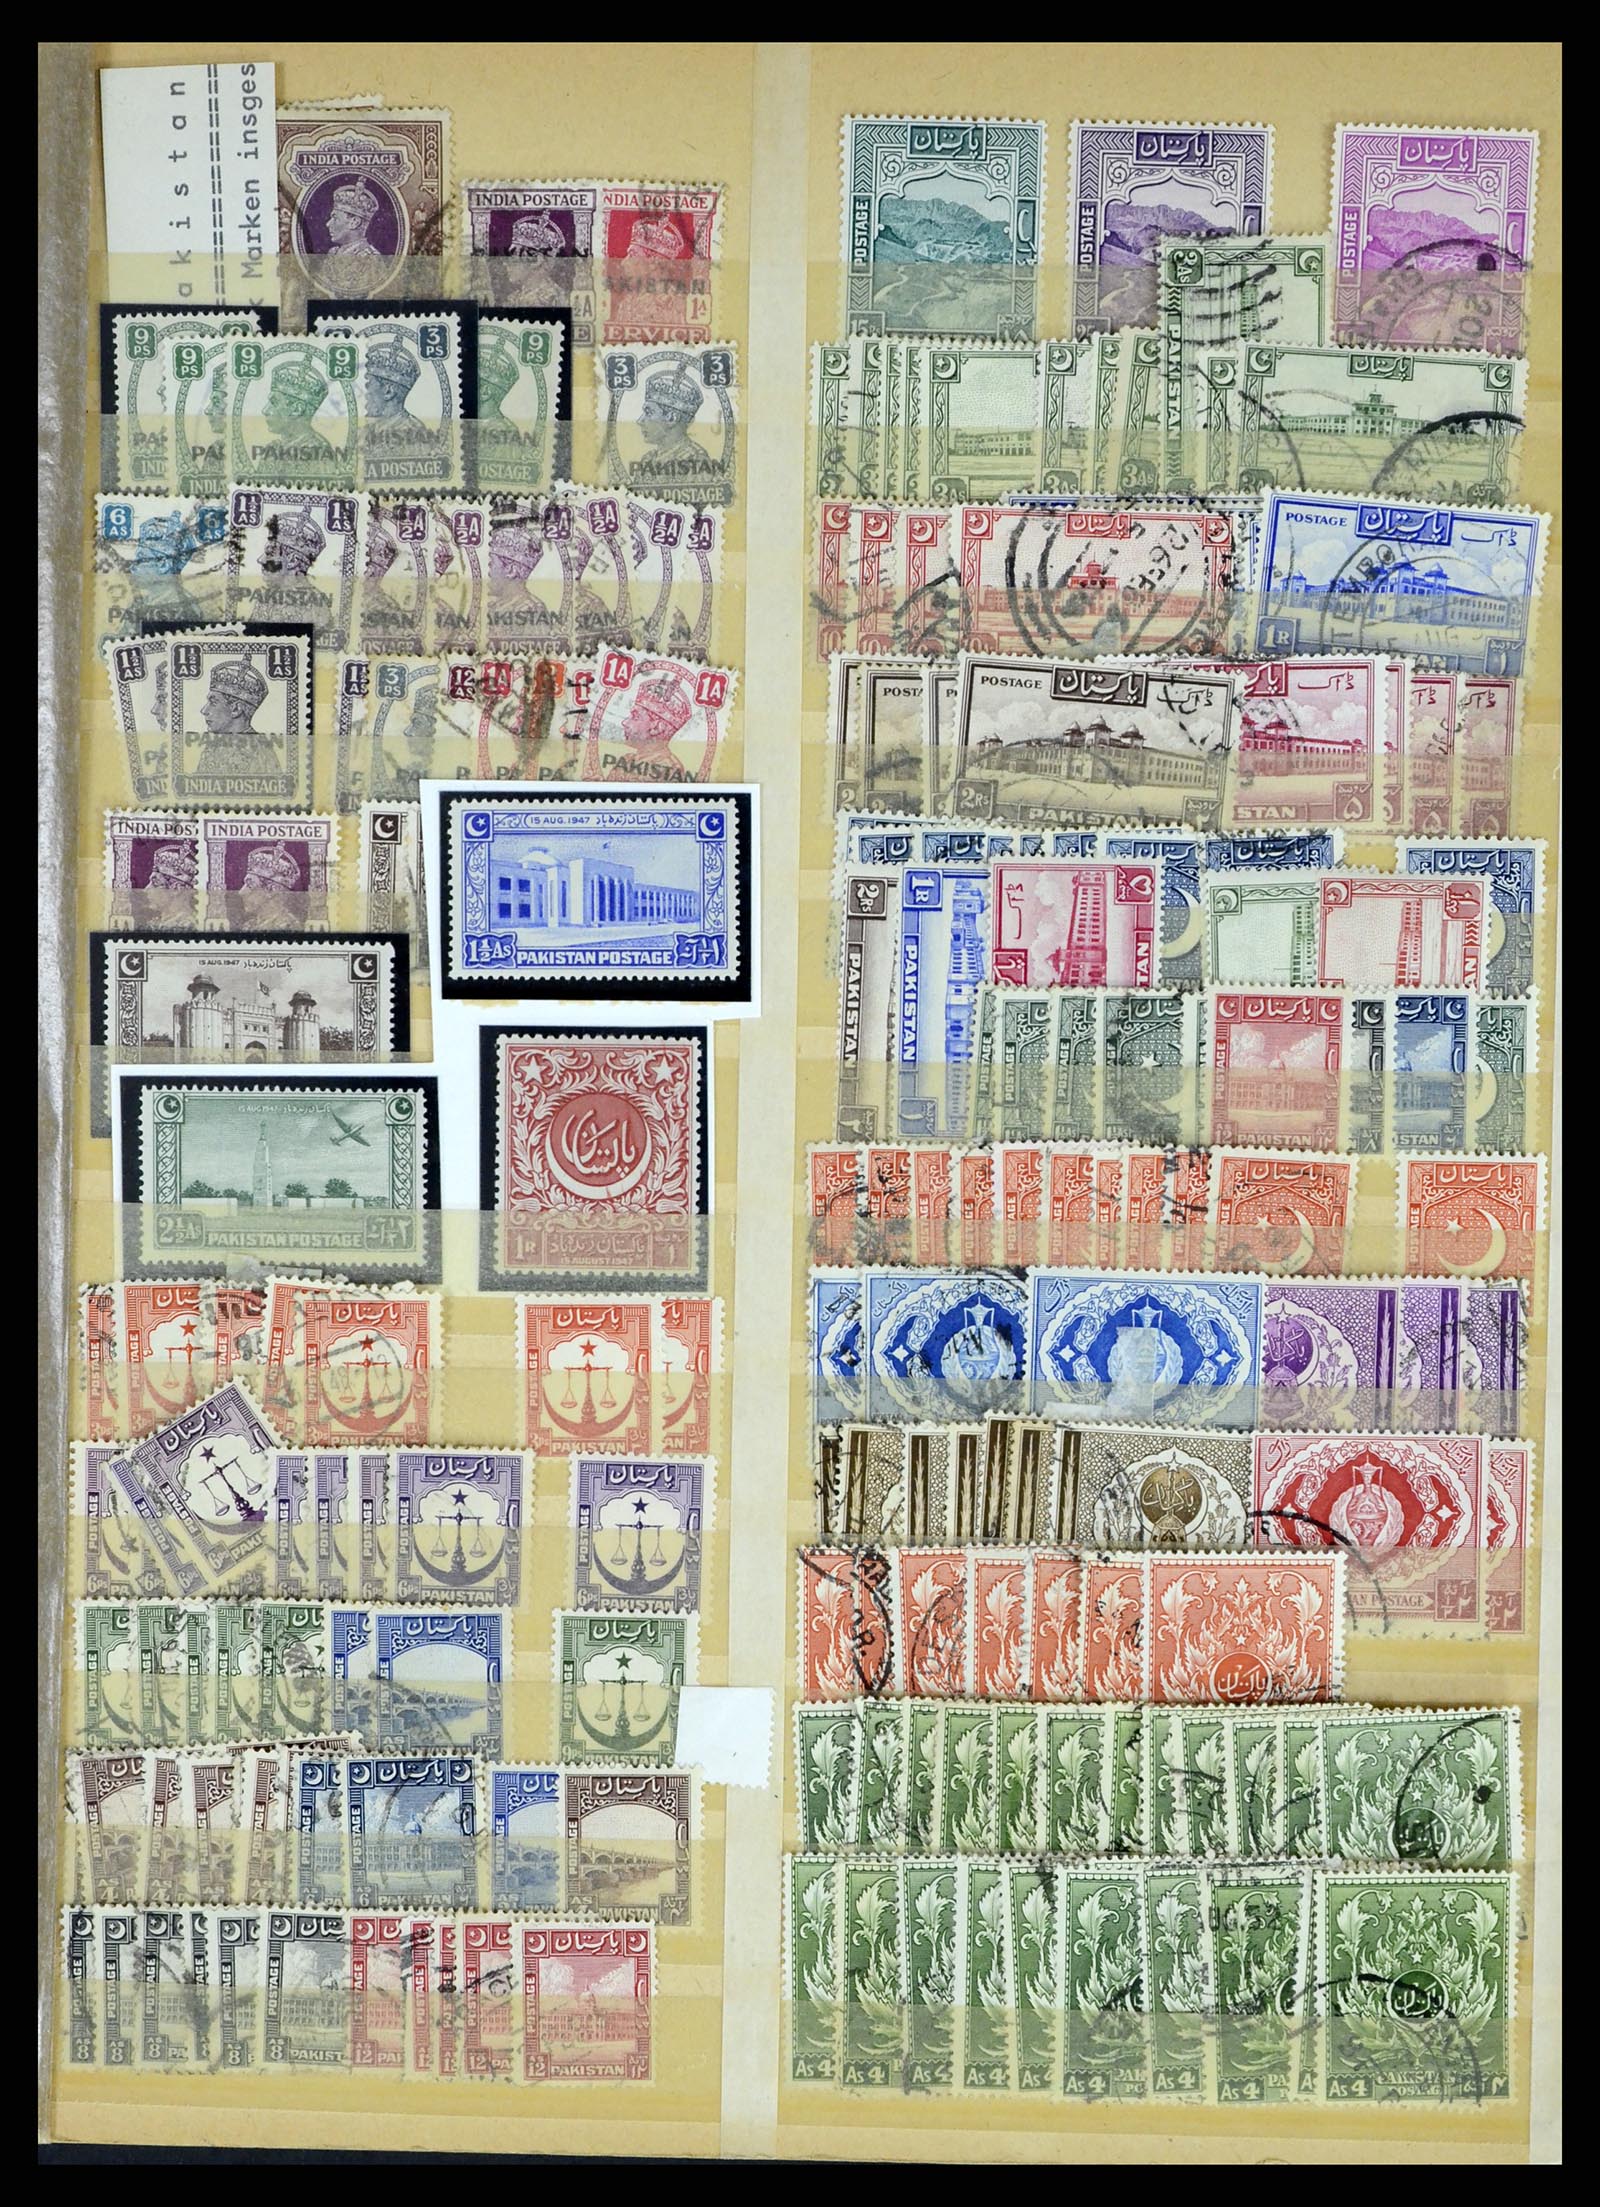 37619 322 - Stamp collection 37619 Pakistan/Bangladesh 1947-2000.